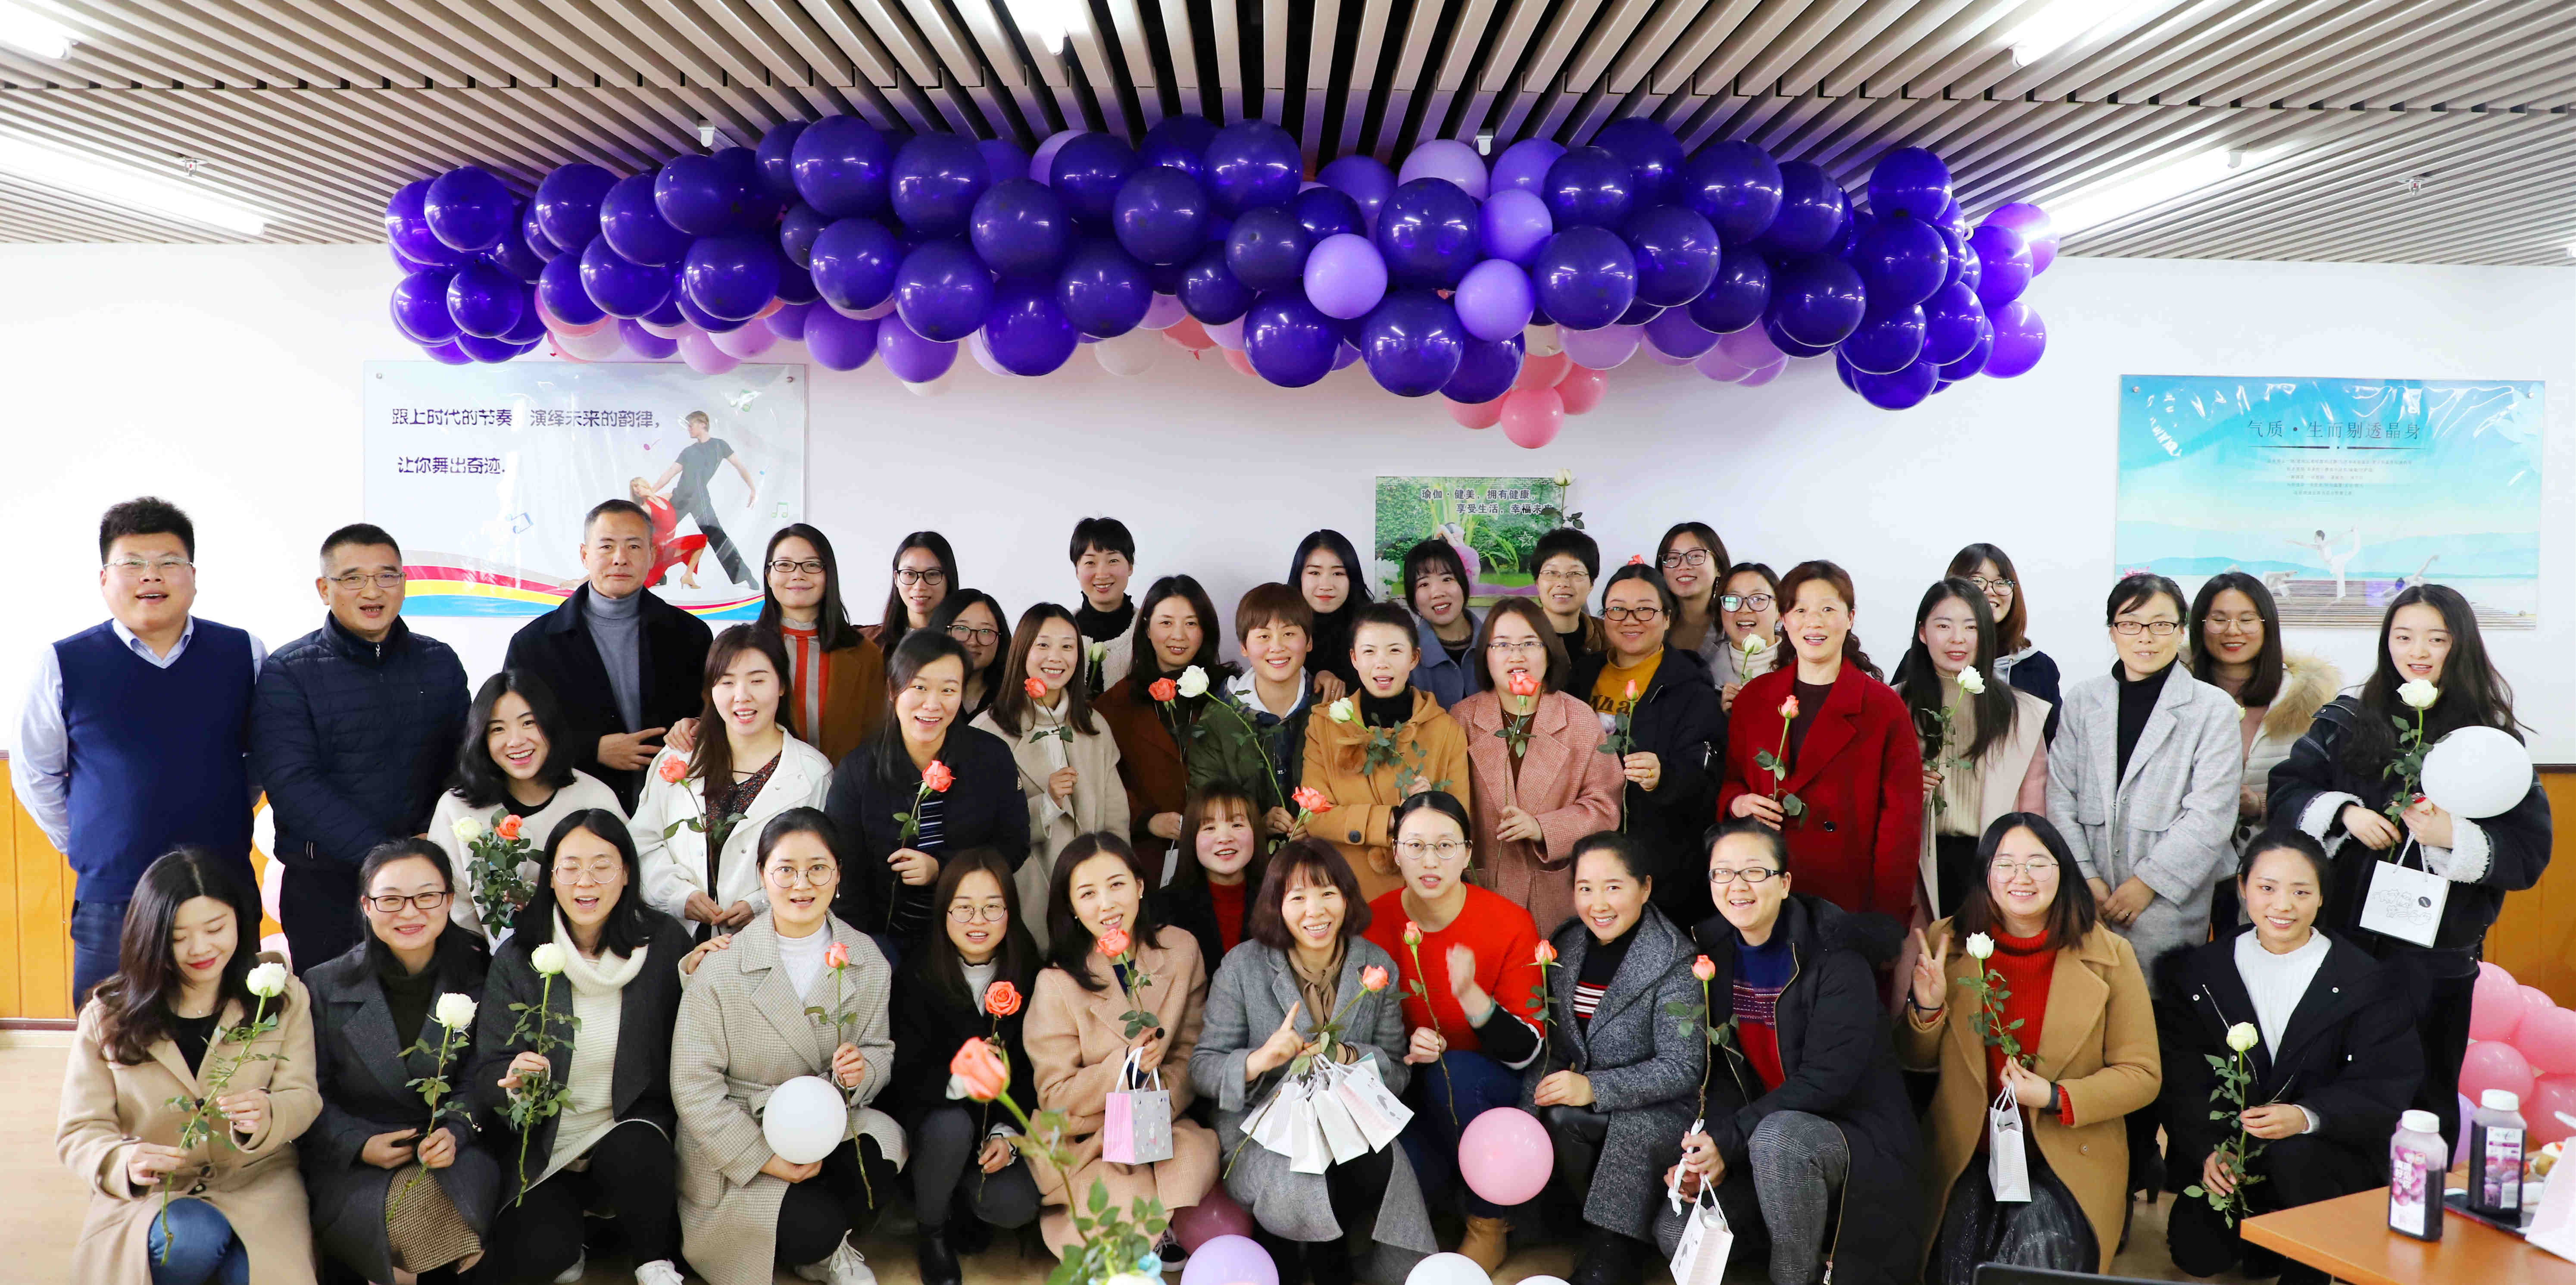 助力职场女性成长 集团工会举办“女神节”暖心活动